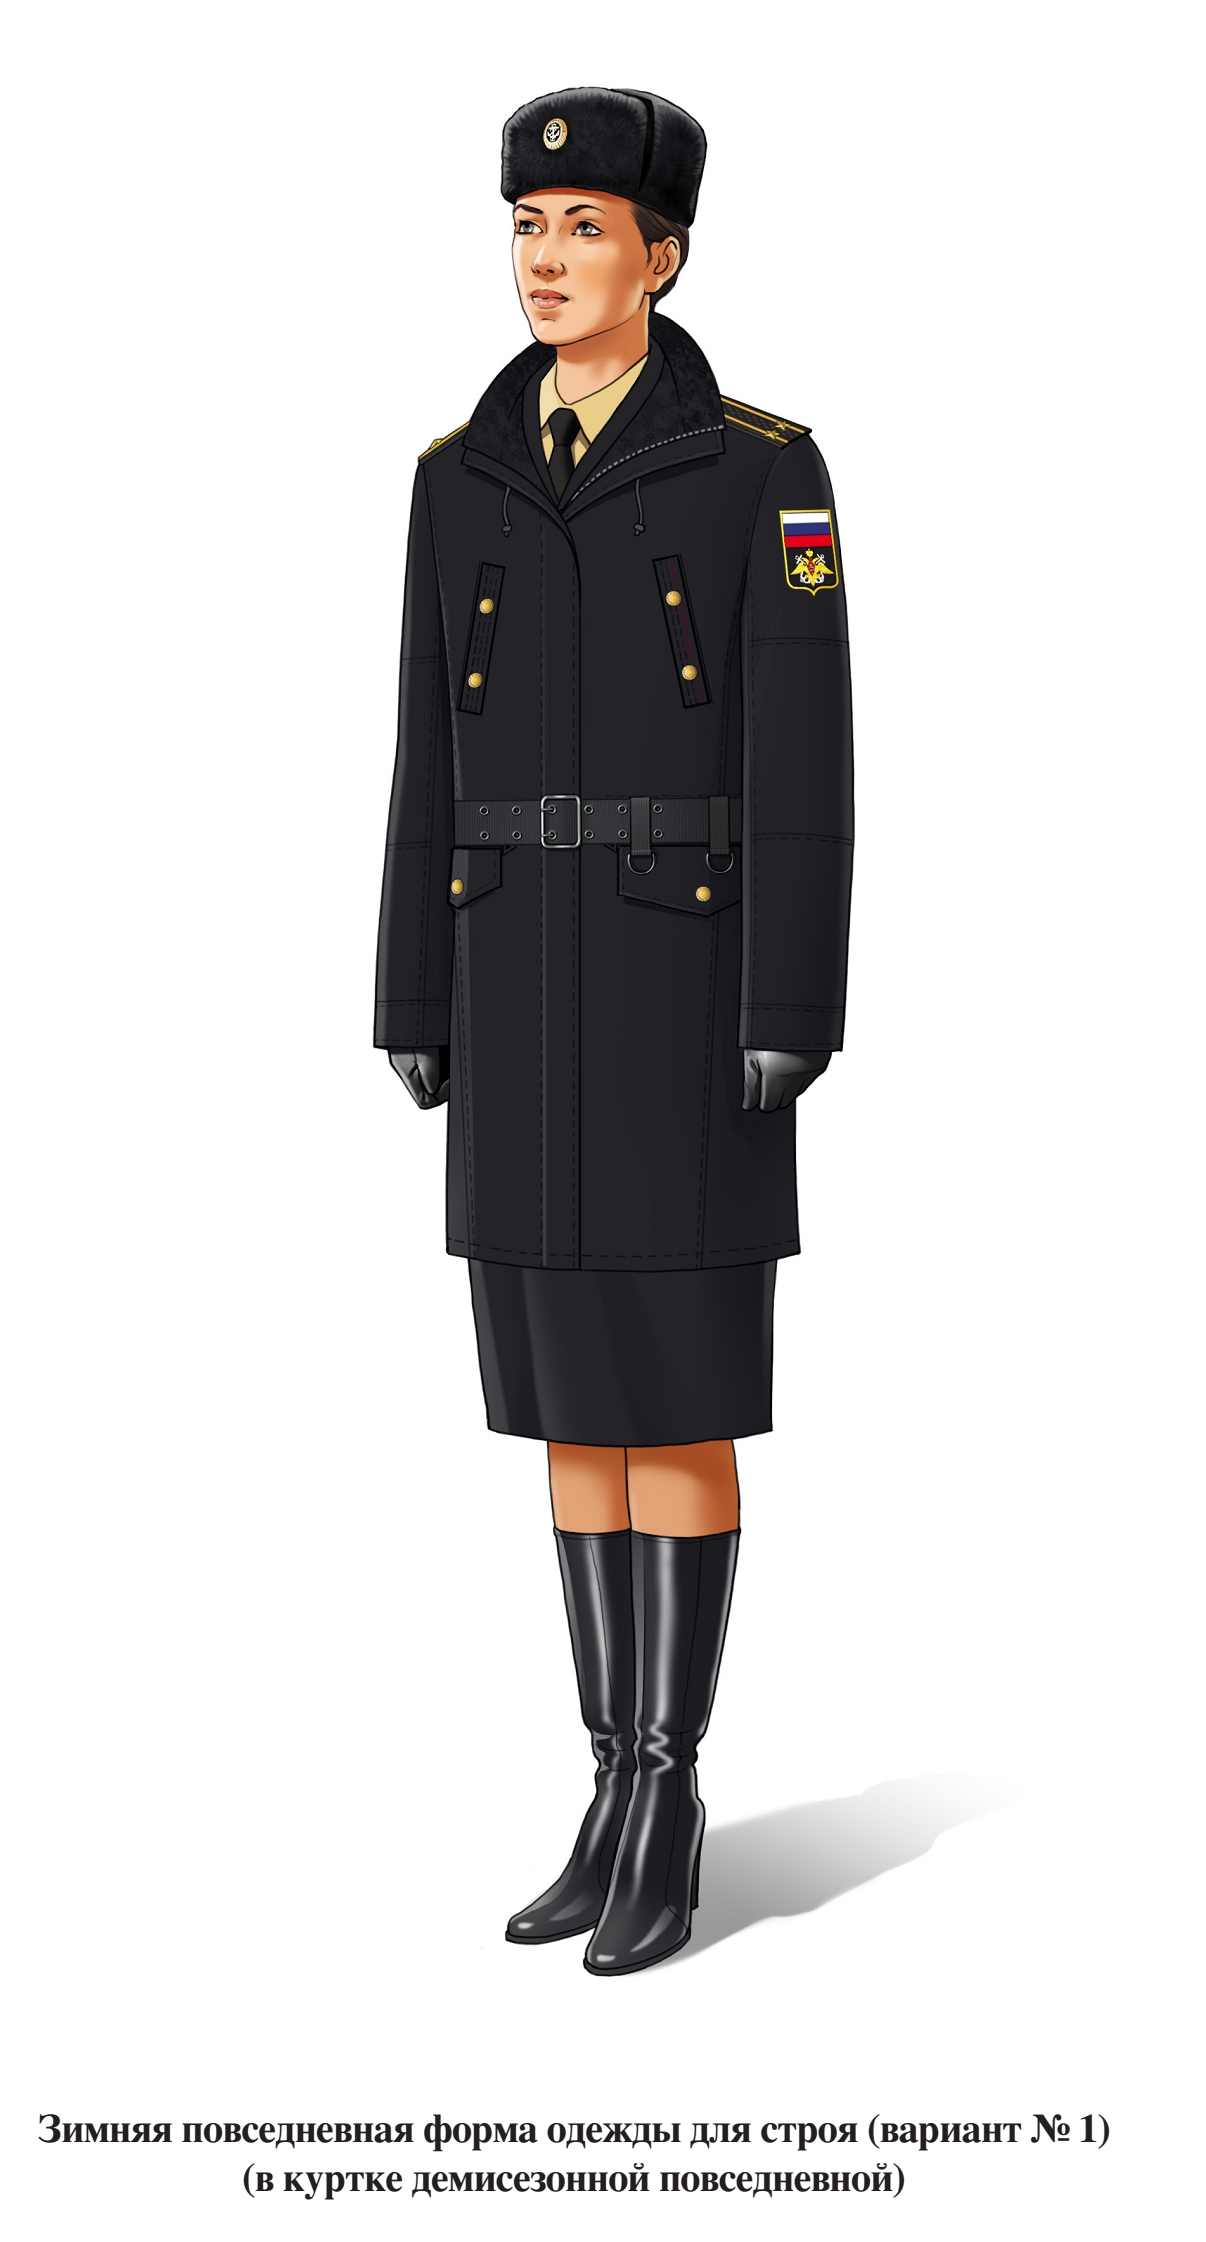 Зимняя повседневная форма военнослужащих женского пола для строя